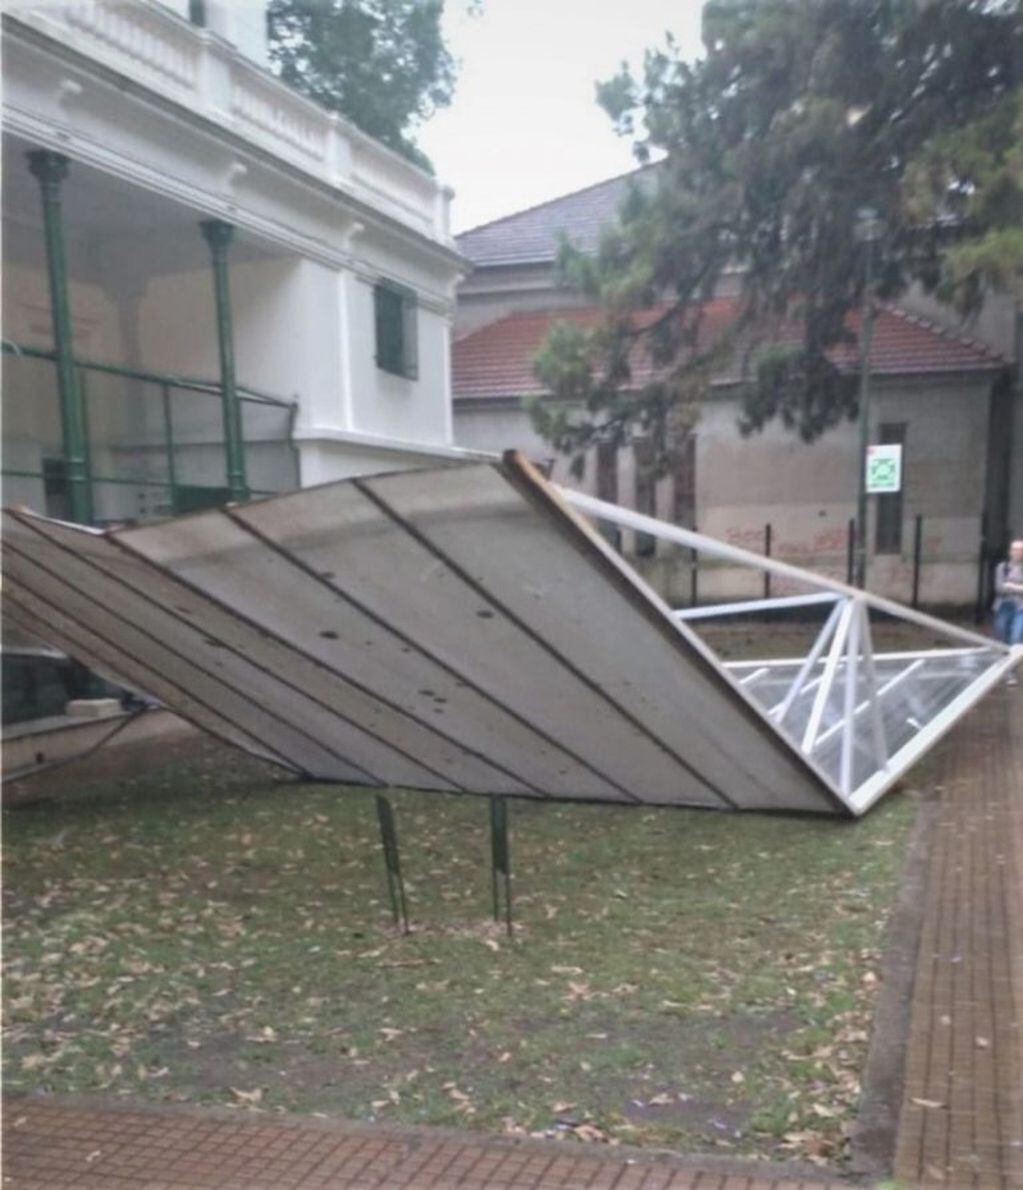 La tormenta generó serios destrozos a lo largo y ancho de la ciudad (web).